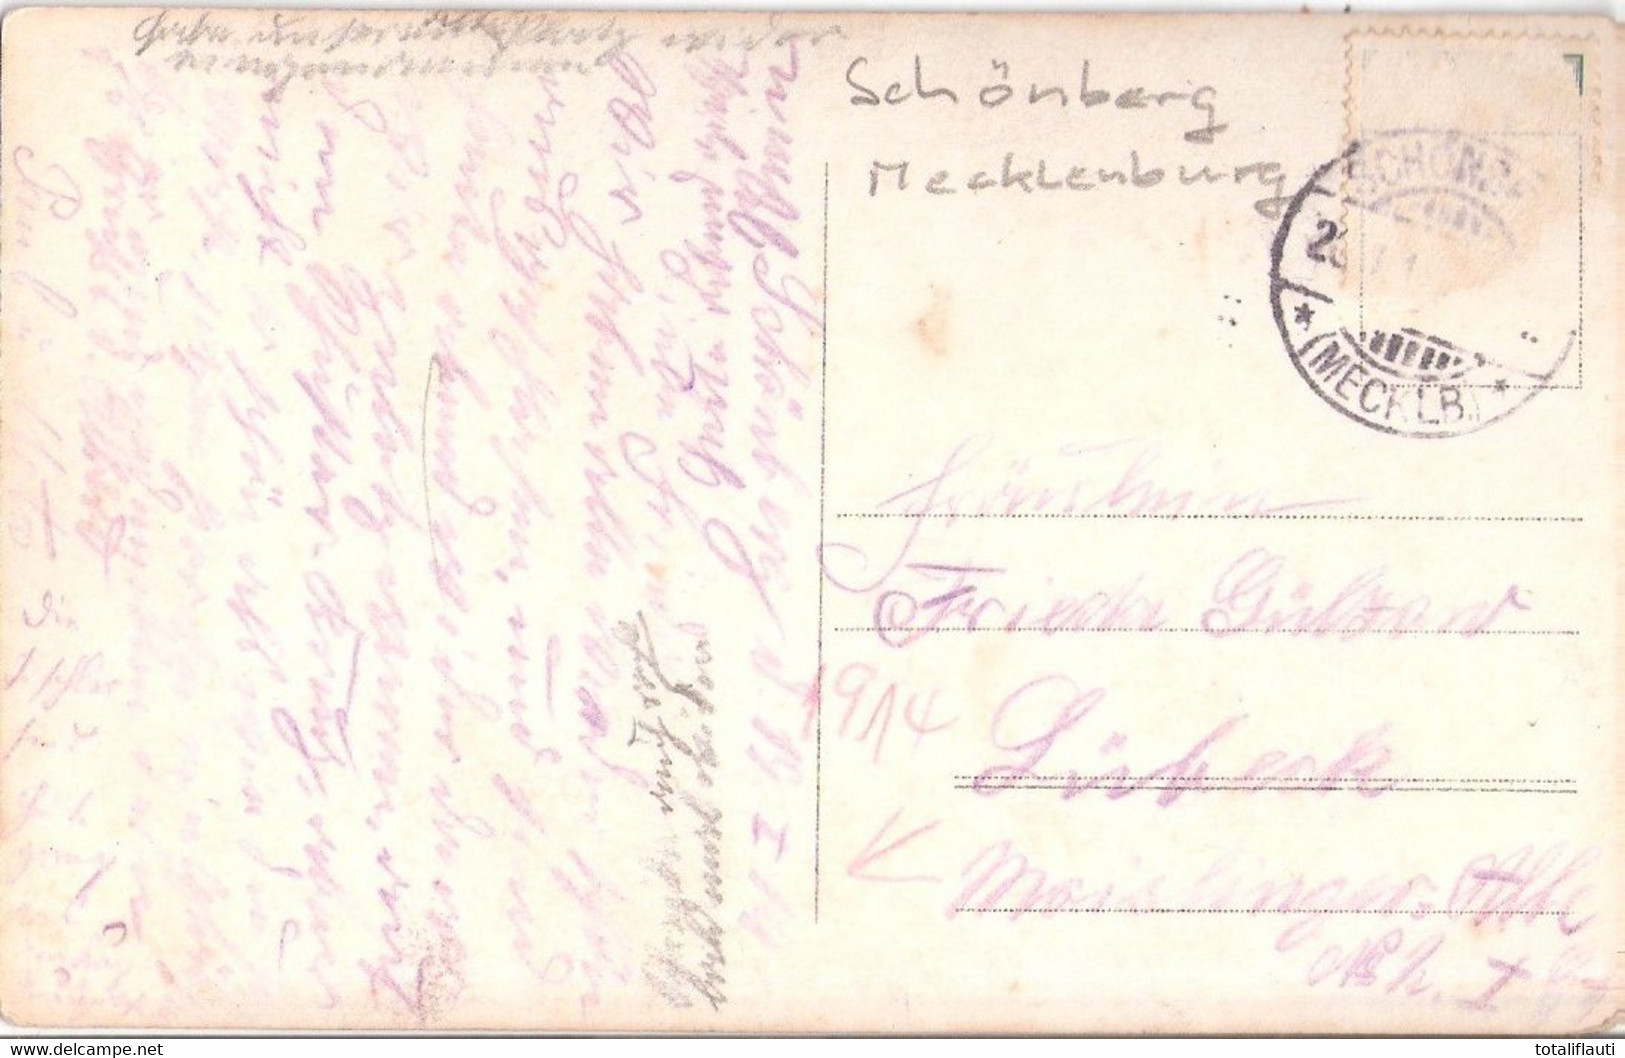 SCHÖNBERG Mecklenburg Mutter + Sohn Vor Der Haustür Schaukelpferd Kinder Spielzeug Original Private Fotokarte 19.1.1914 - Grevesmühlen